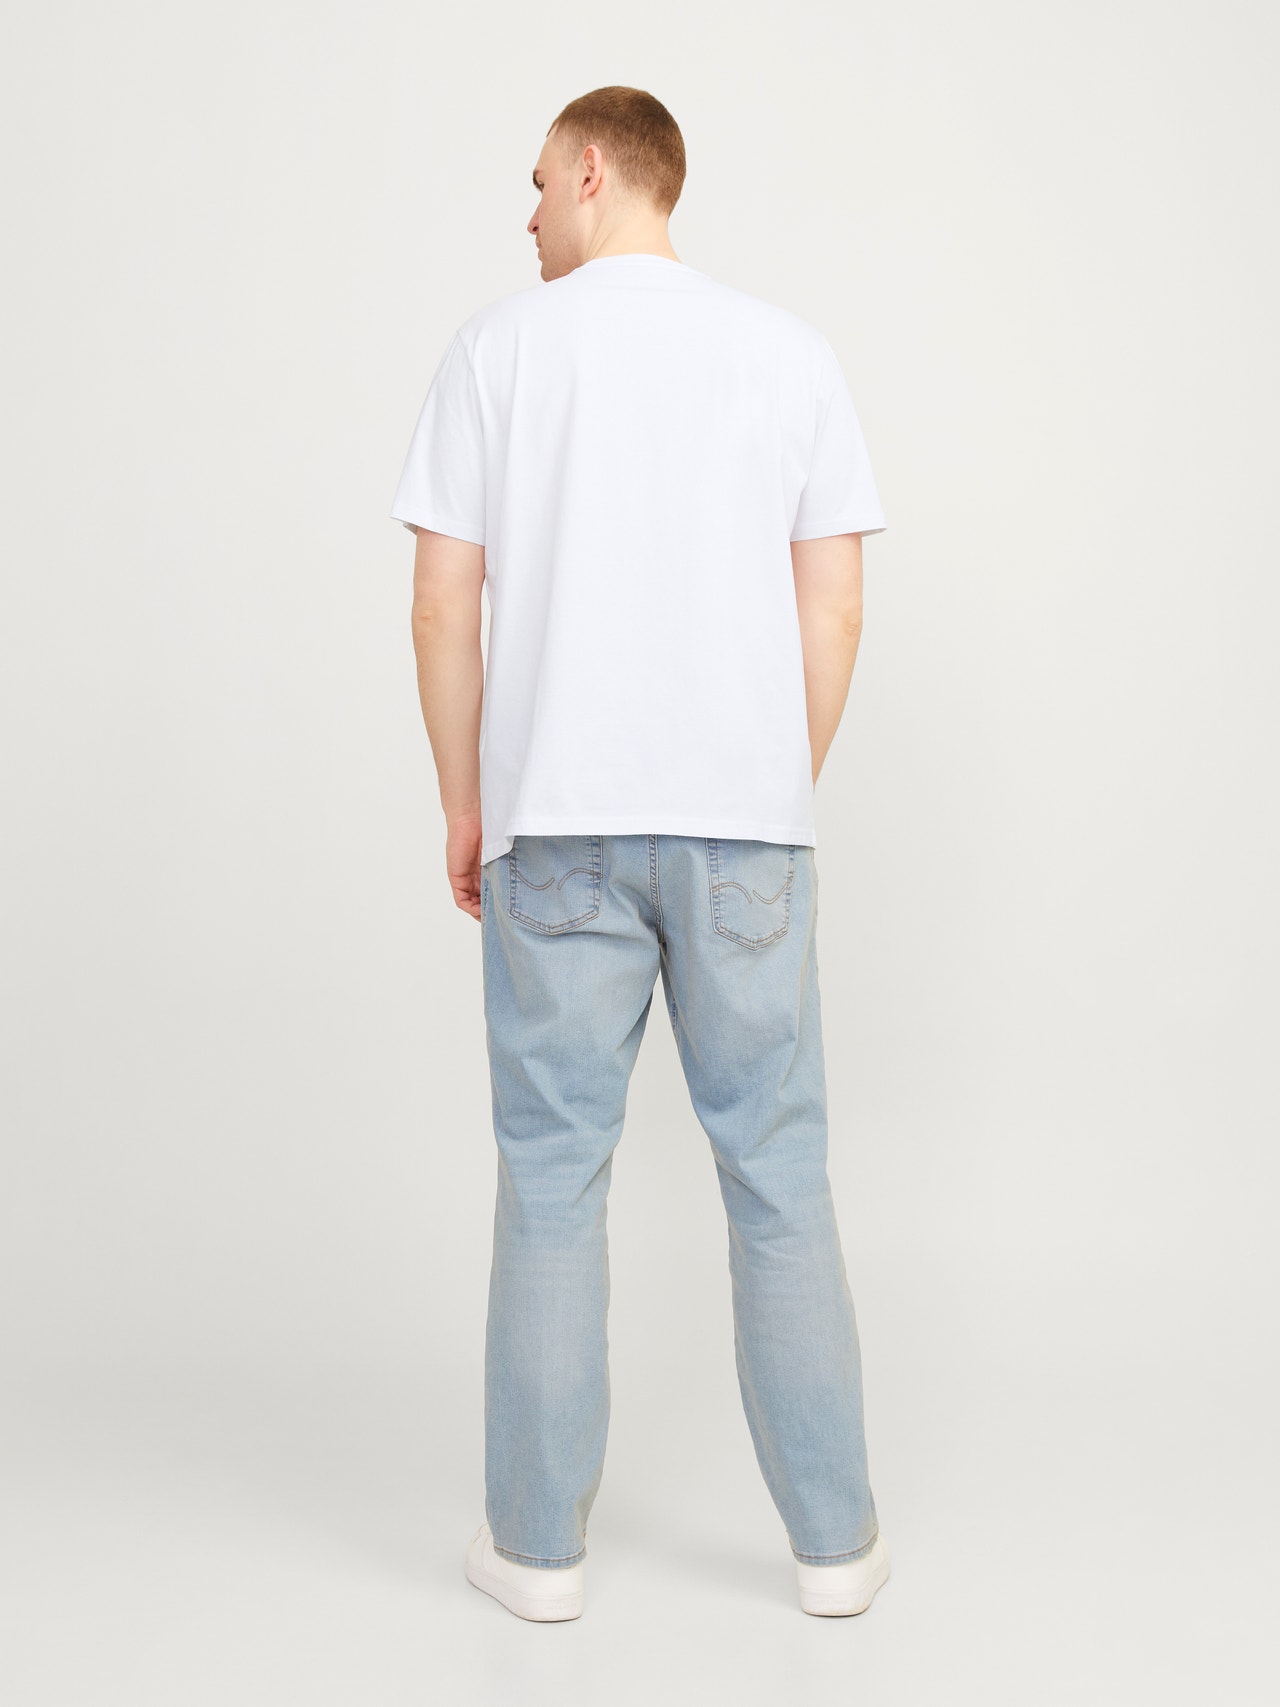 Jack & Jones Plus Size T-shirt Imprimé -Bright White - 12257513